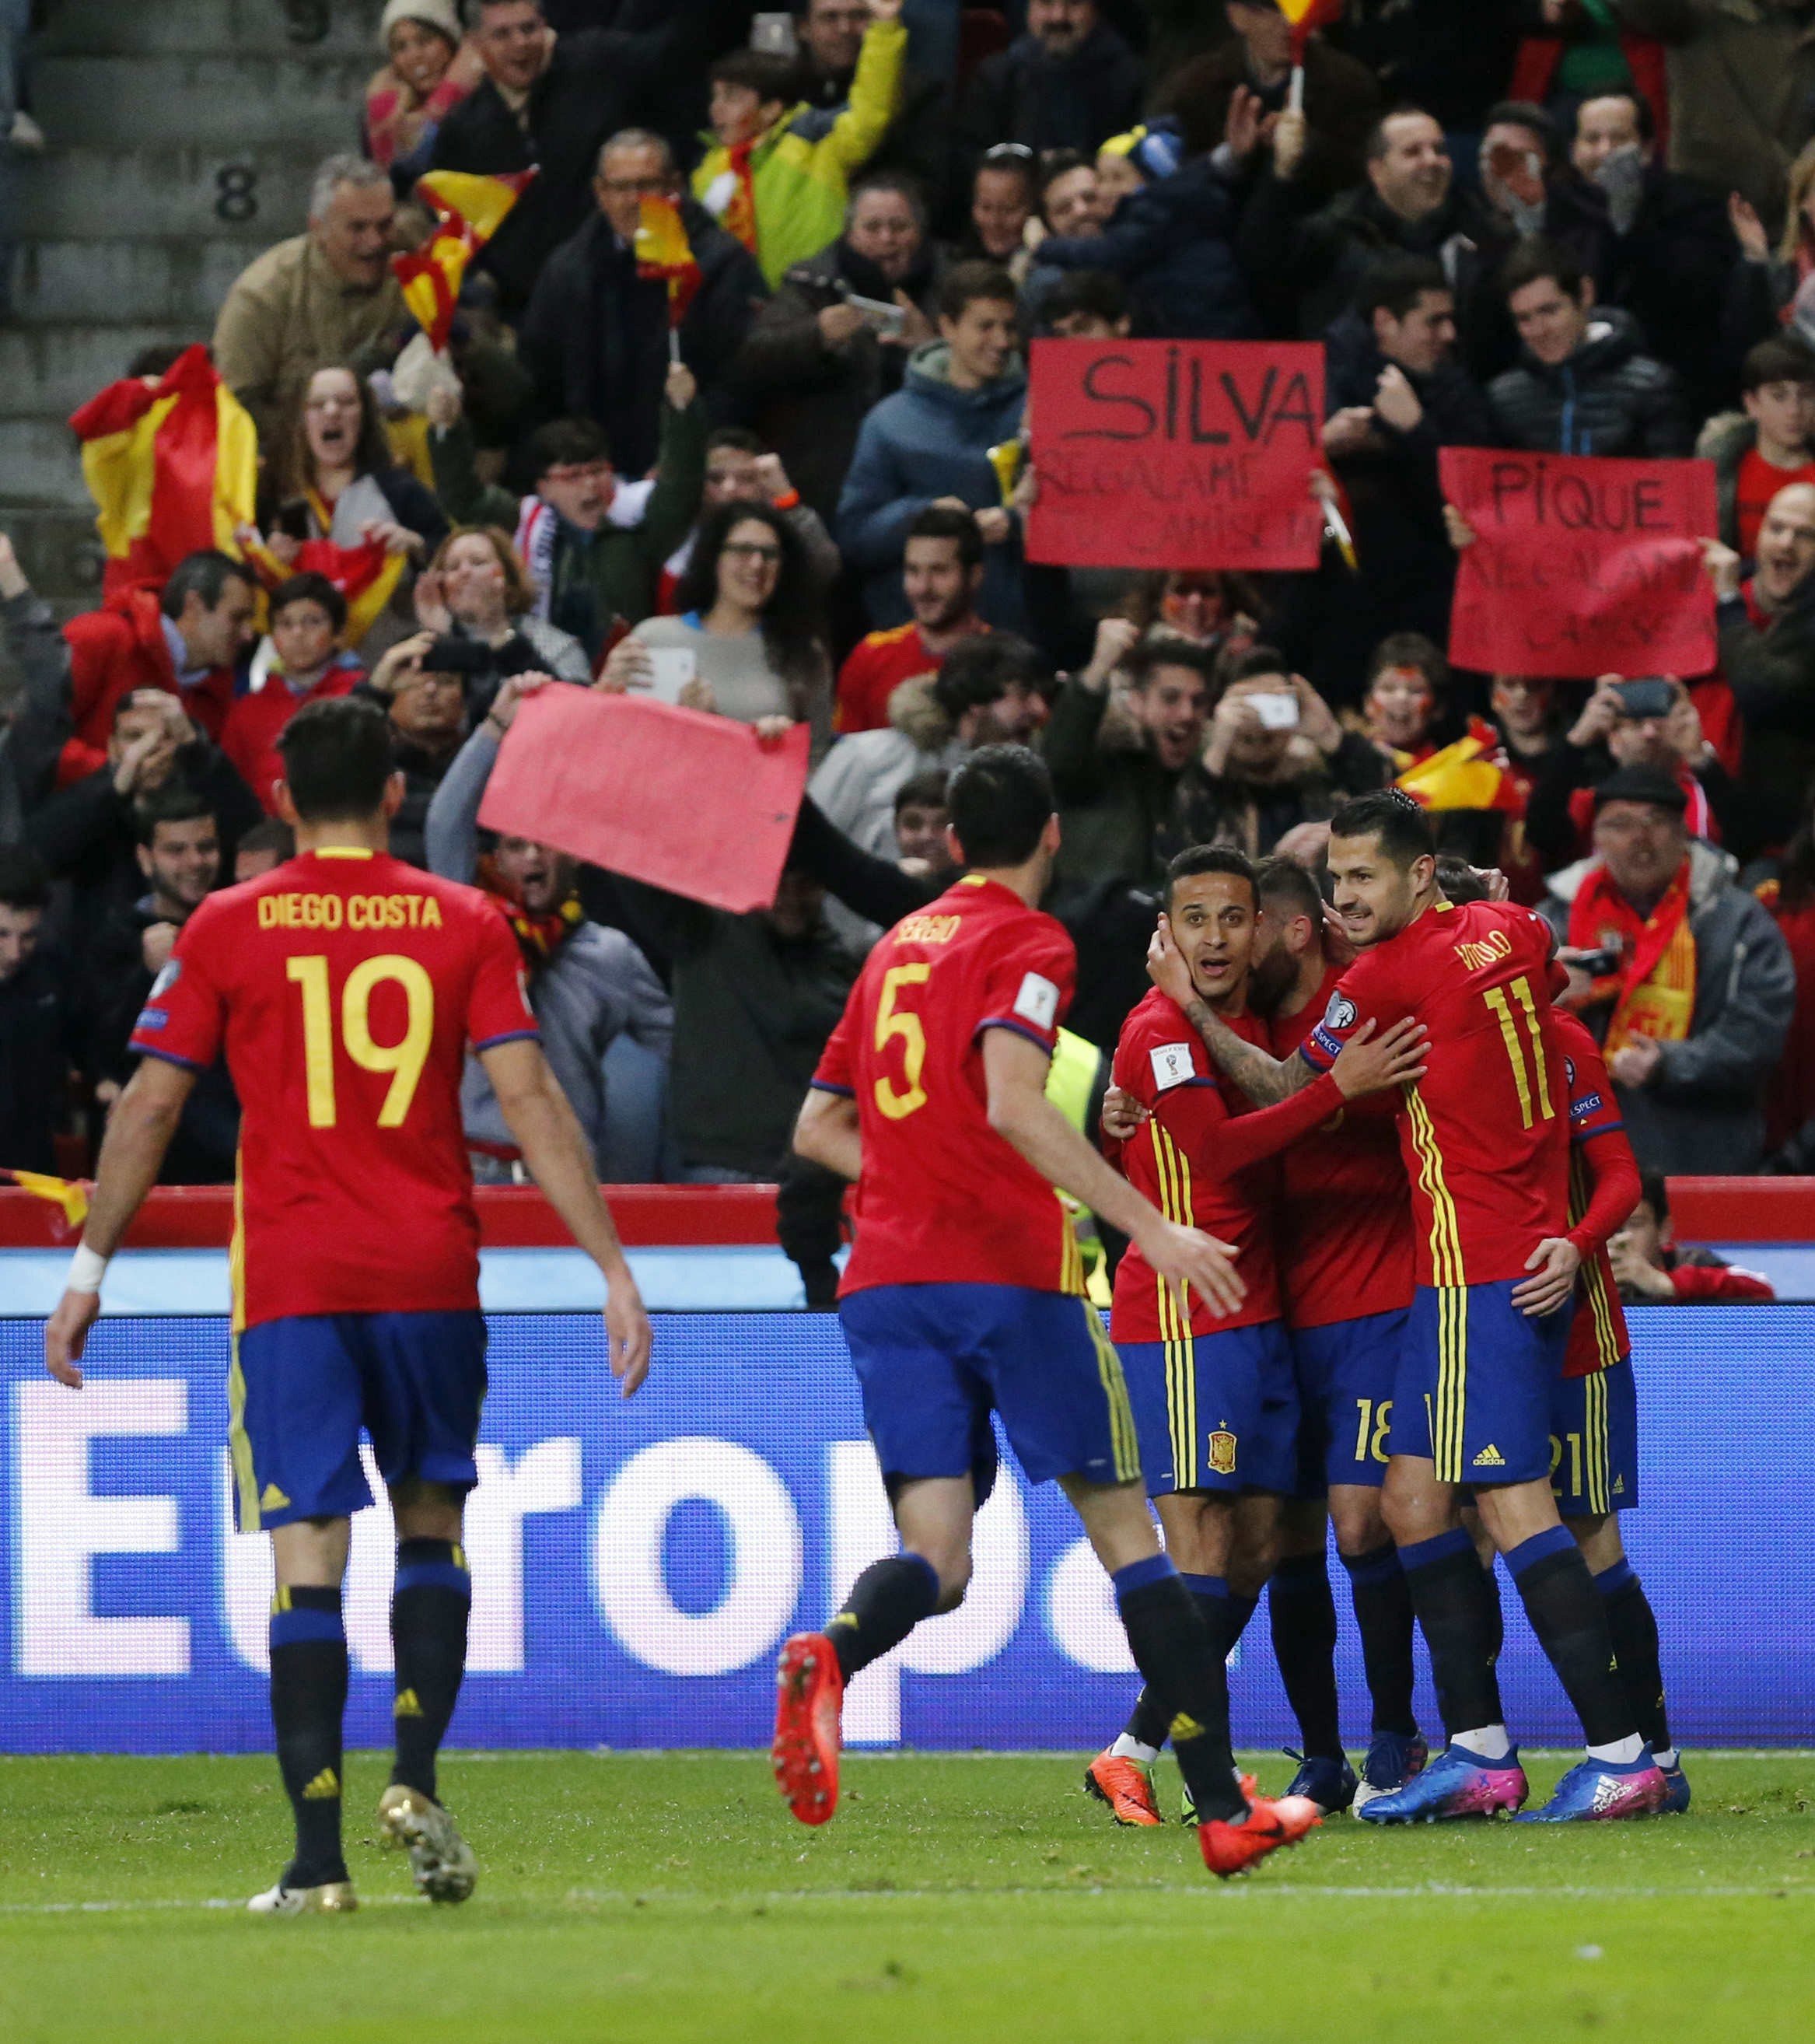 Més de la meitat dels catalans s'enorgulleix de les victòries de la selecció espanyola